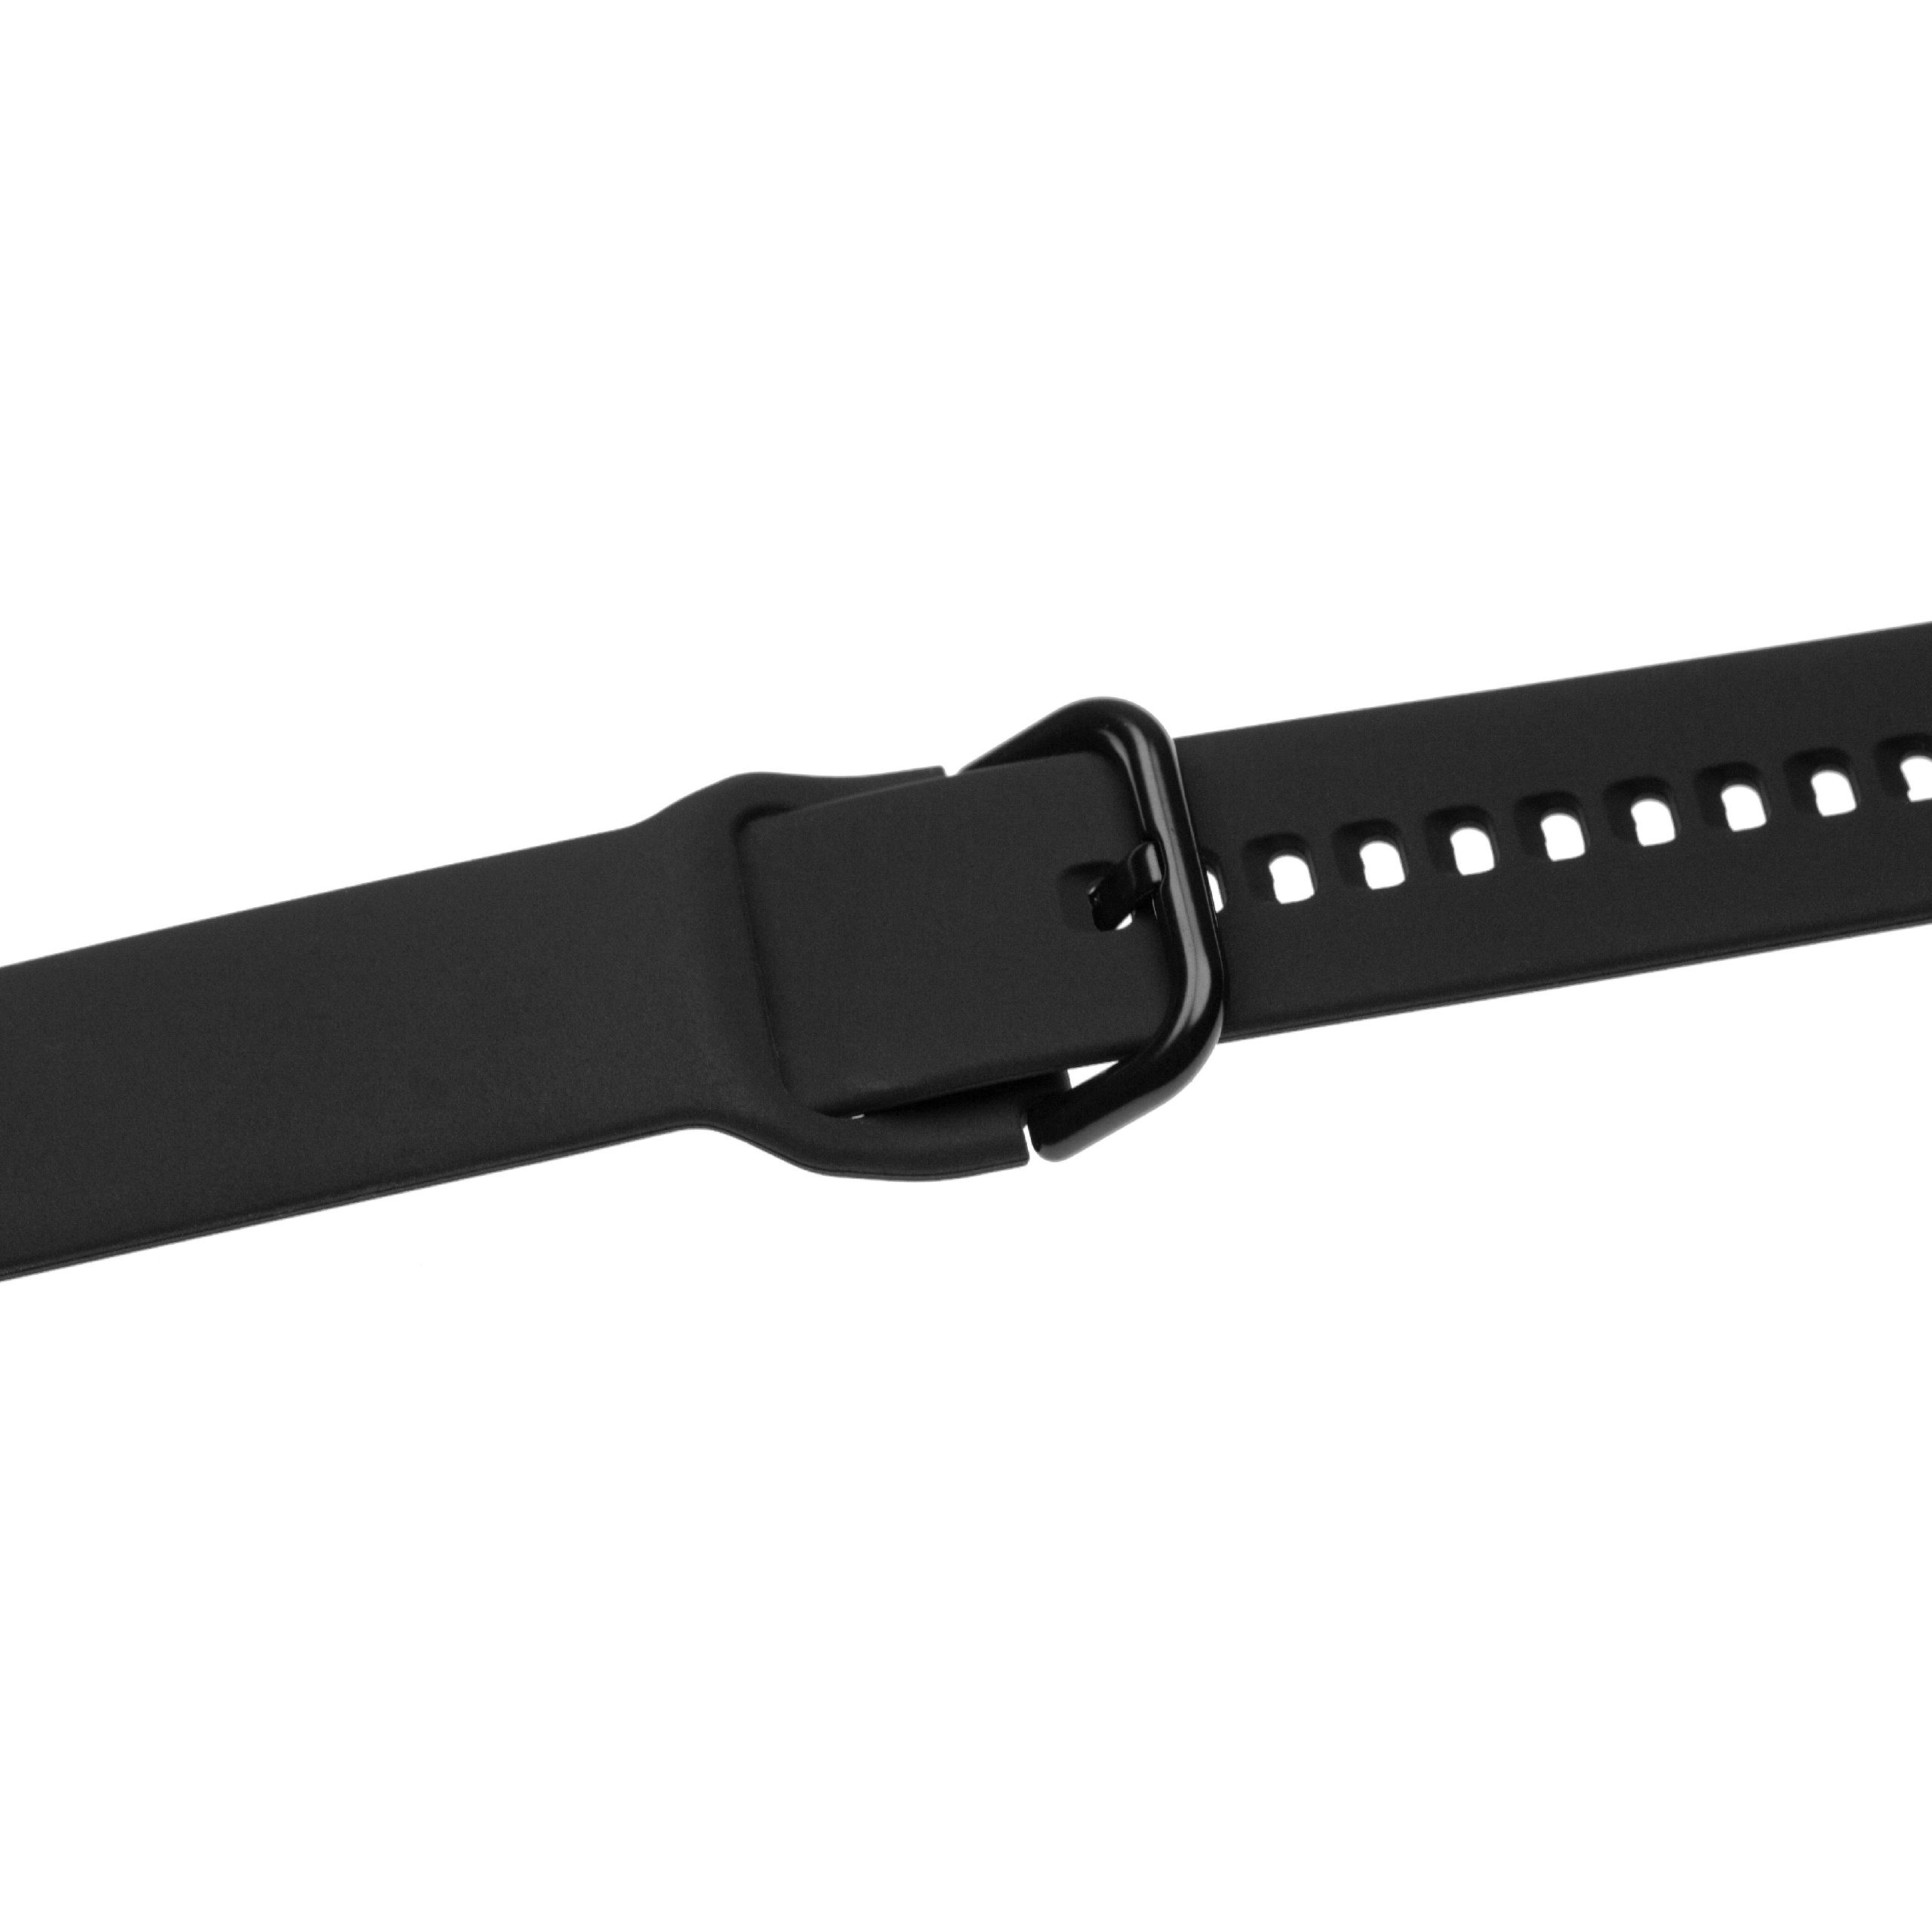 Armband für Samsung Galaxy Watch Smartwatch - 13 + 8,8 cm lang, 20mm breit, Silikon, schwarz